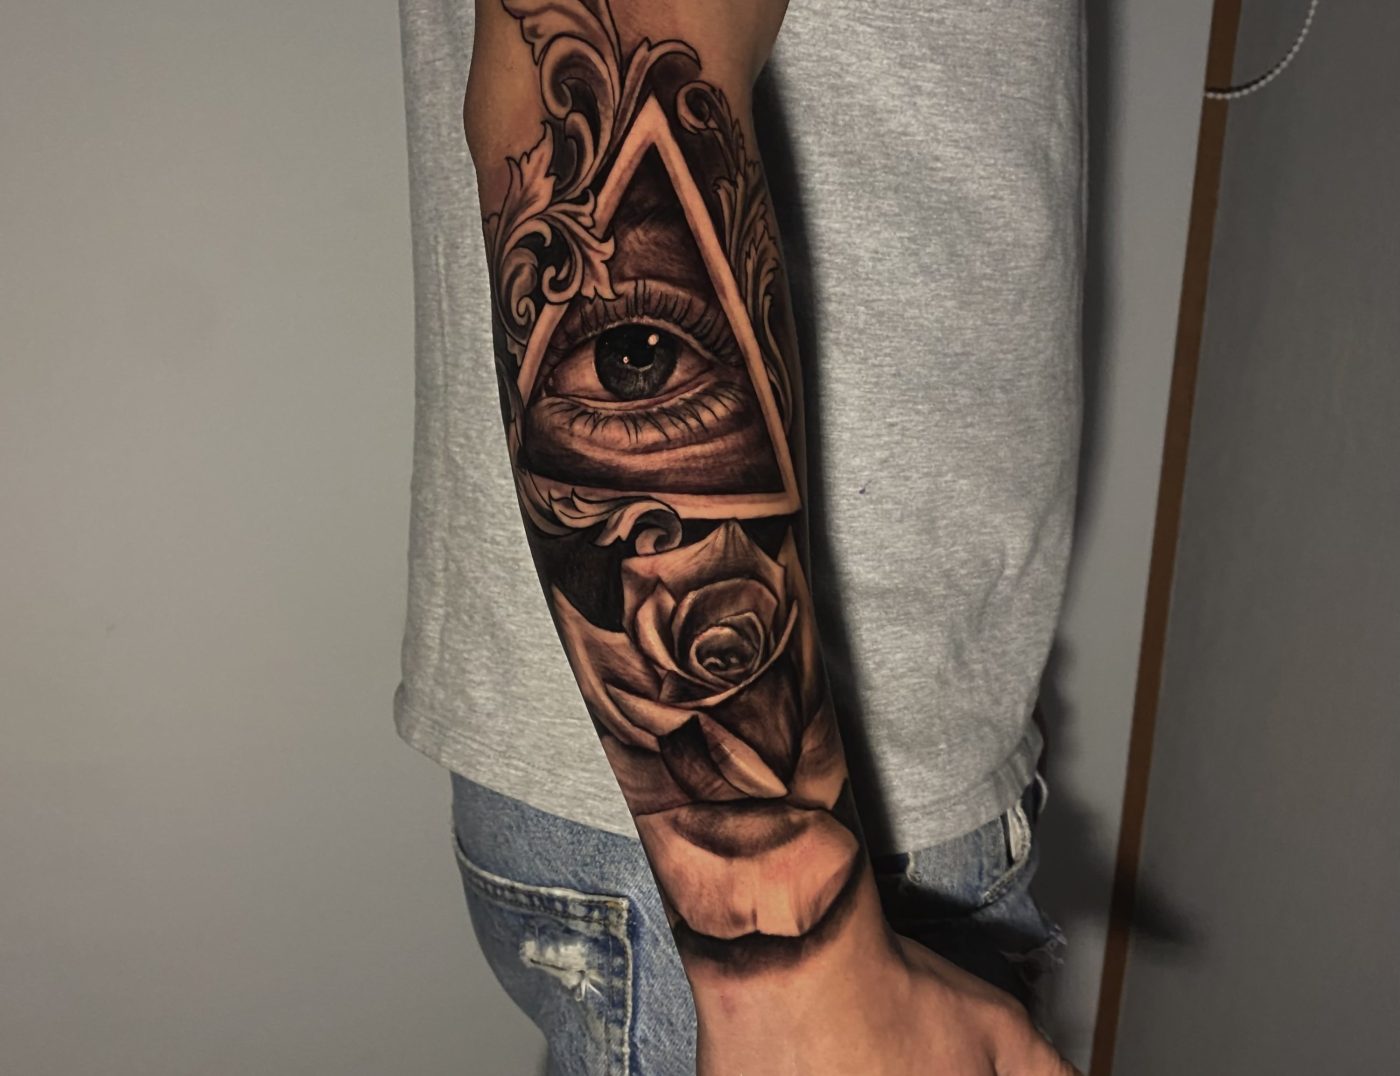 Chardi Kala | Tattoos, Tattoo designs, Side wrist tattoos